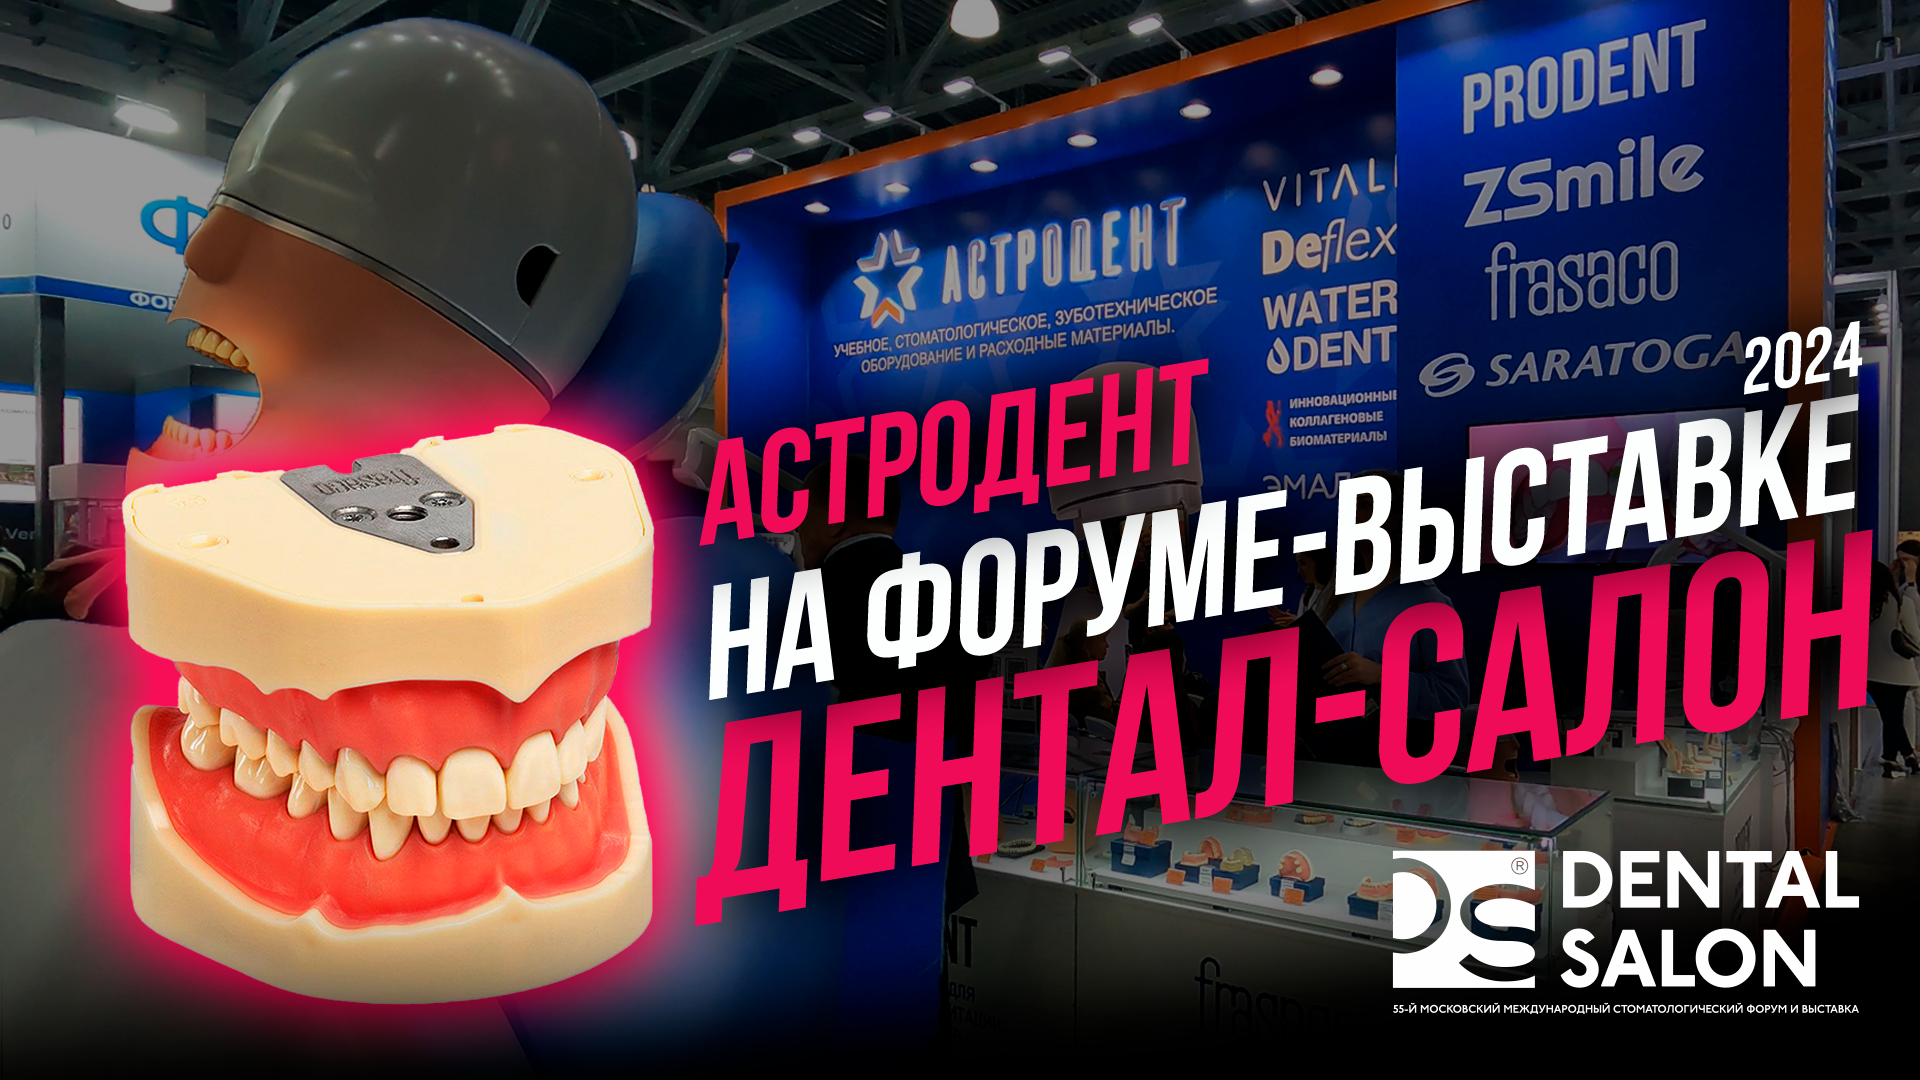 Астродент на стоматологическом форуме-выставке Dental Салон 2024